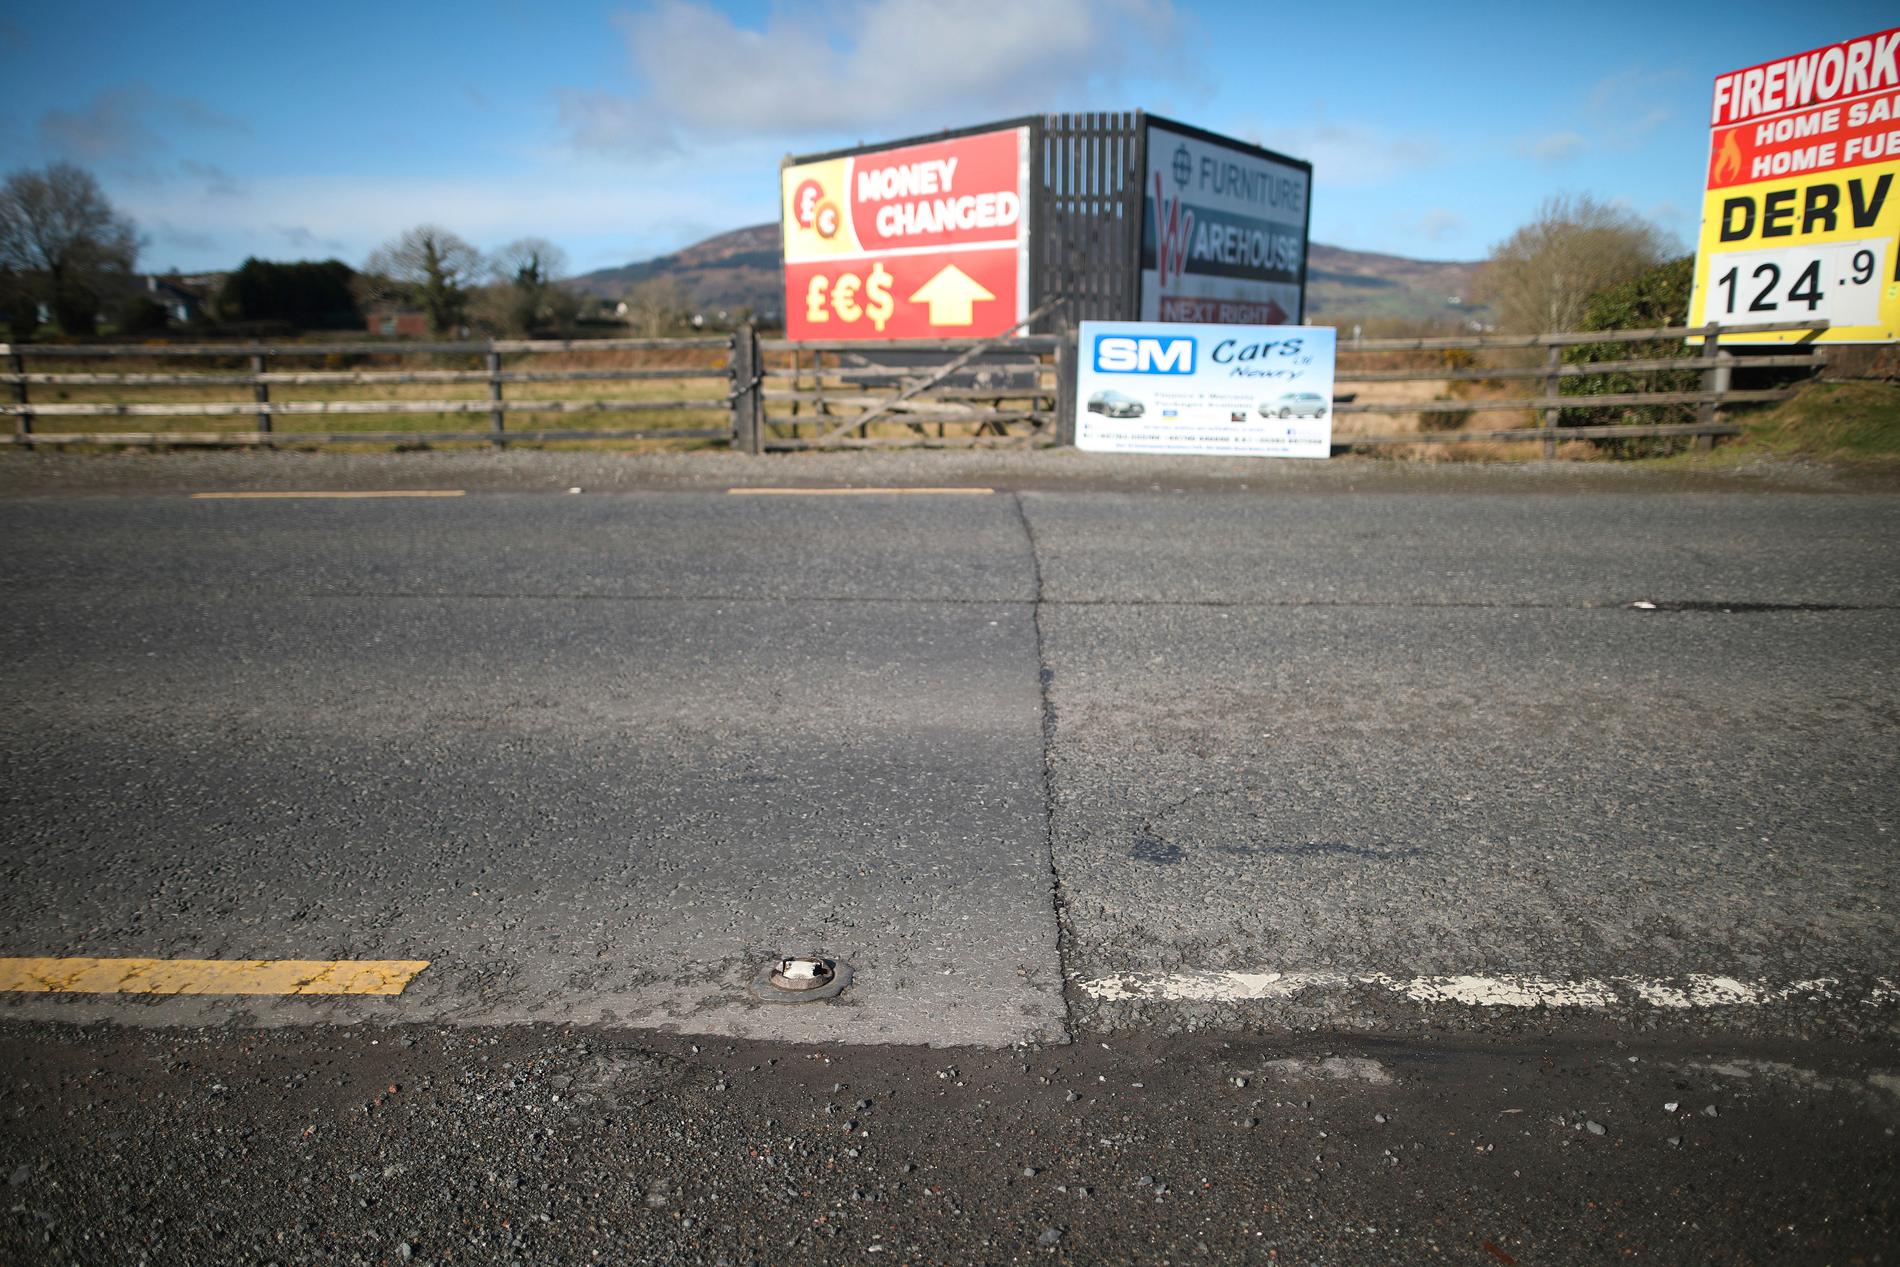 Allt som syns av den tidigare gränsen mellan republiken Irland och Nordirland här är färgen på vägmarkeringarna. Frågan om en ny "hård gräns" på den irländska ön har visat sig vara den hårdaste brexitnöten att knäcka.